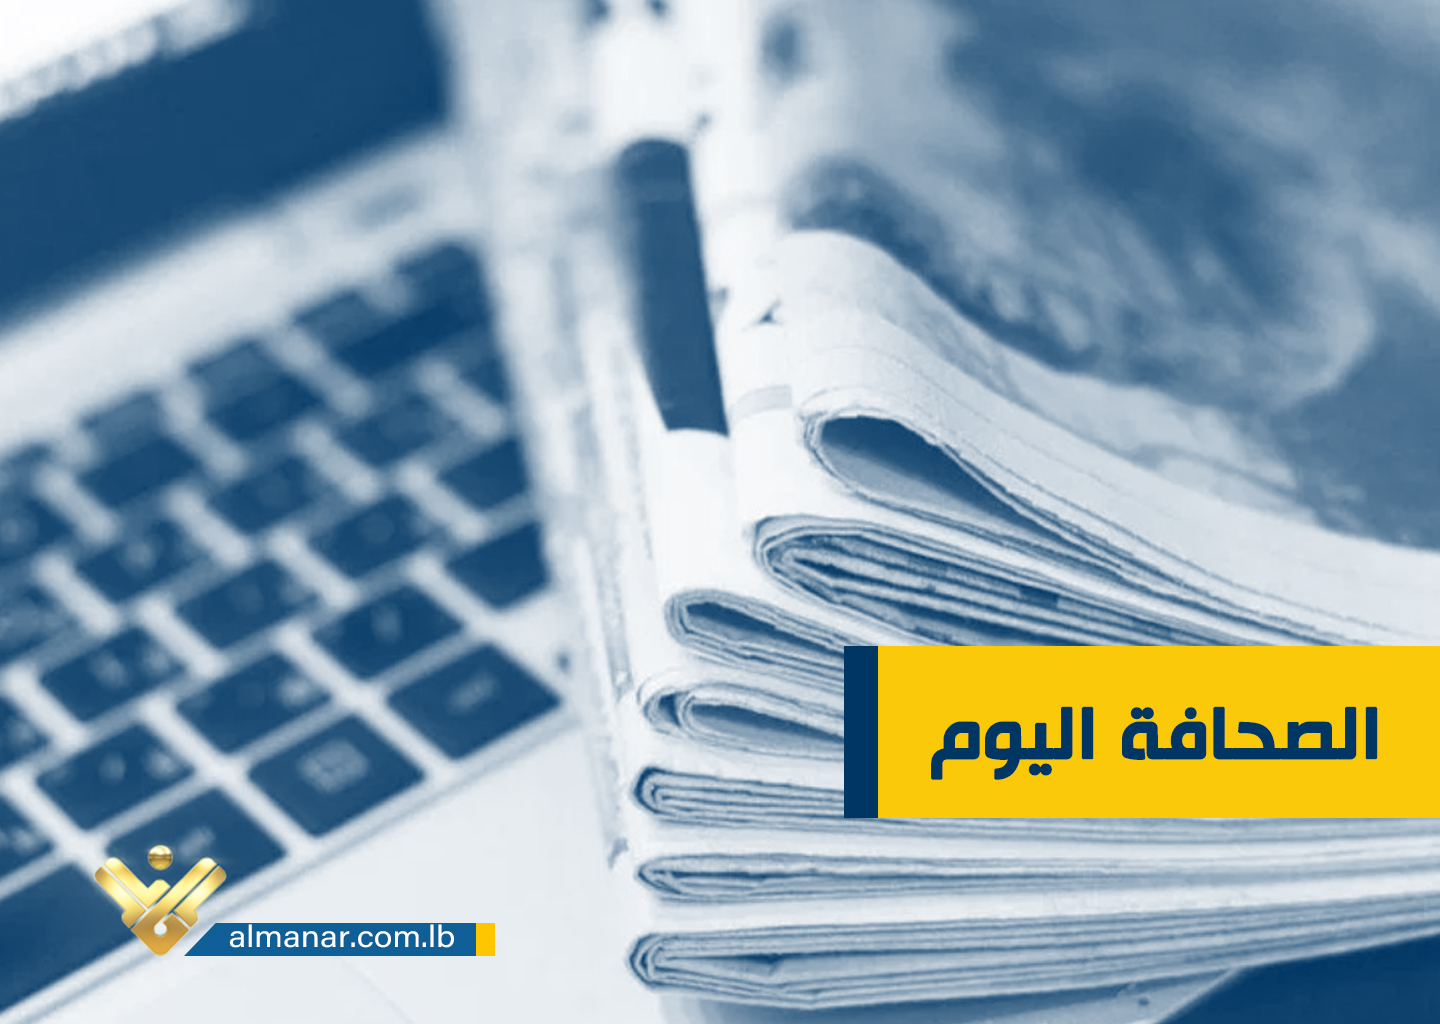 عناوين واسرار الصحف اللبنانية ليوم الجمعة 31 آذار/ مارس 2023